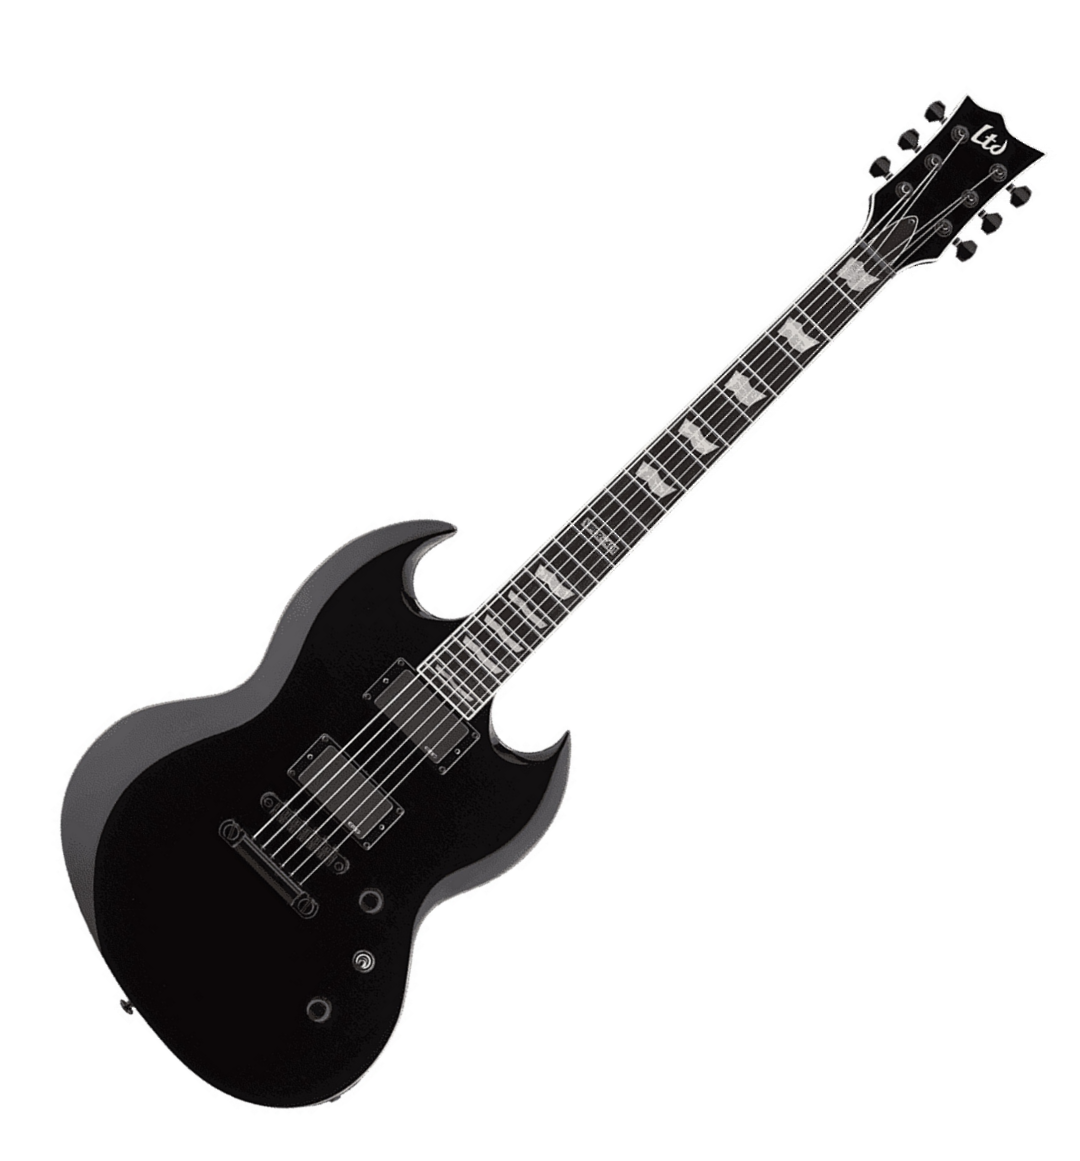 Ltd Viper-401 Hh Emg Ht Rw - Black - Guitarra eléctrica de doble corte. - Variation 3